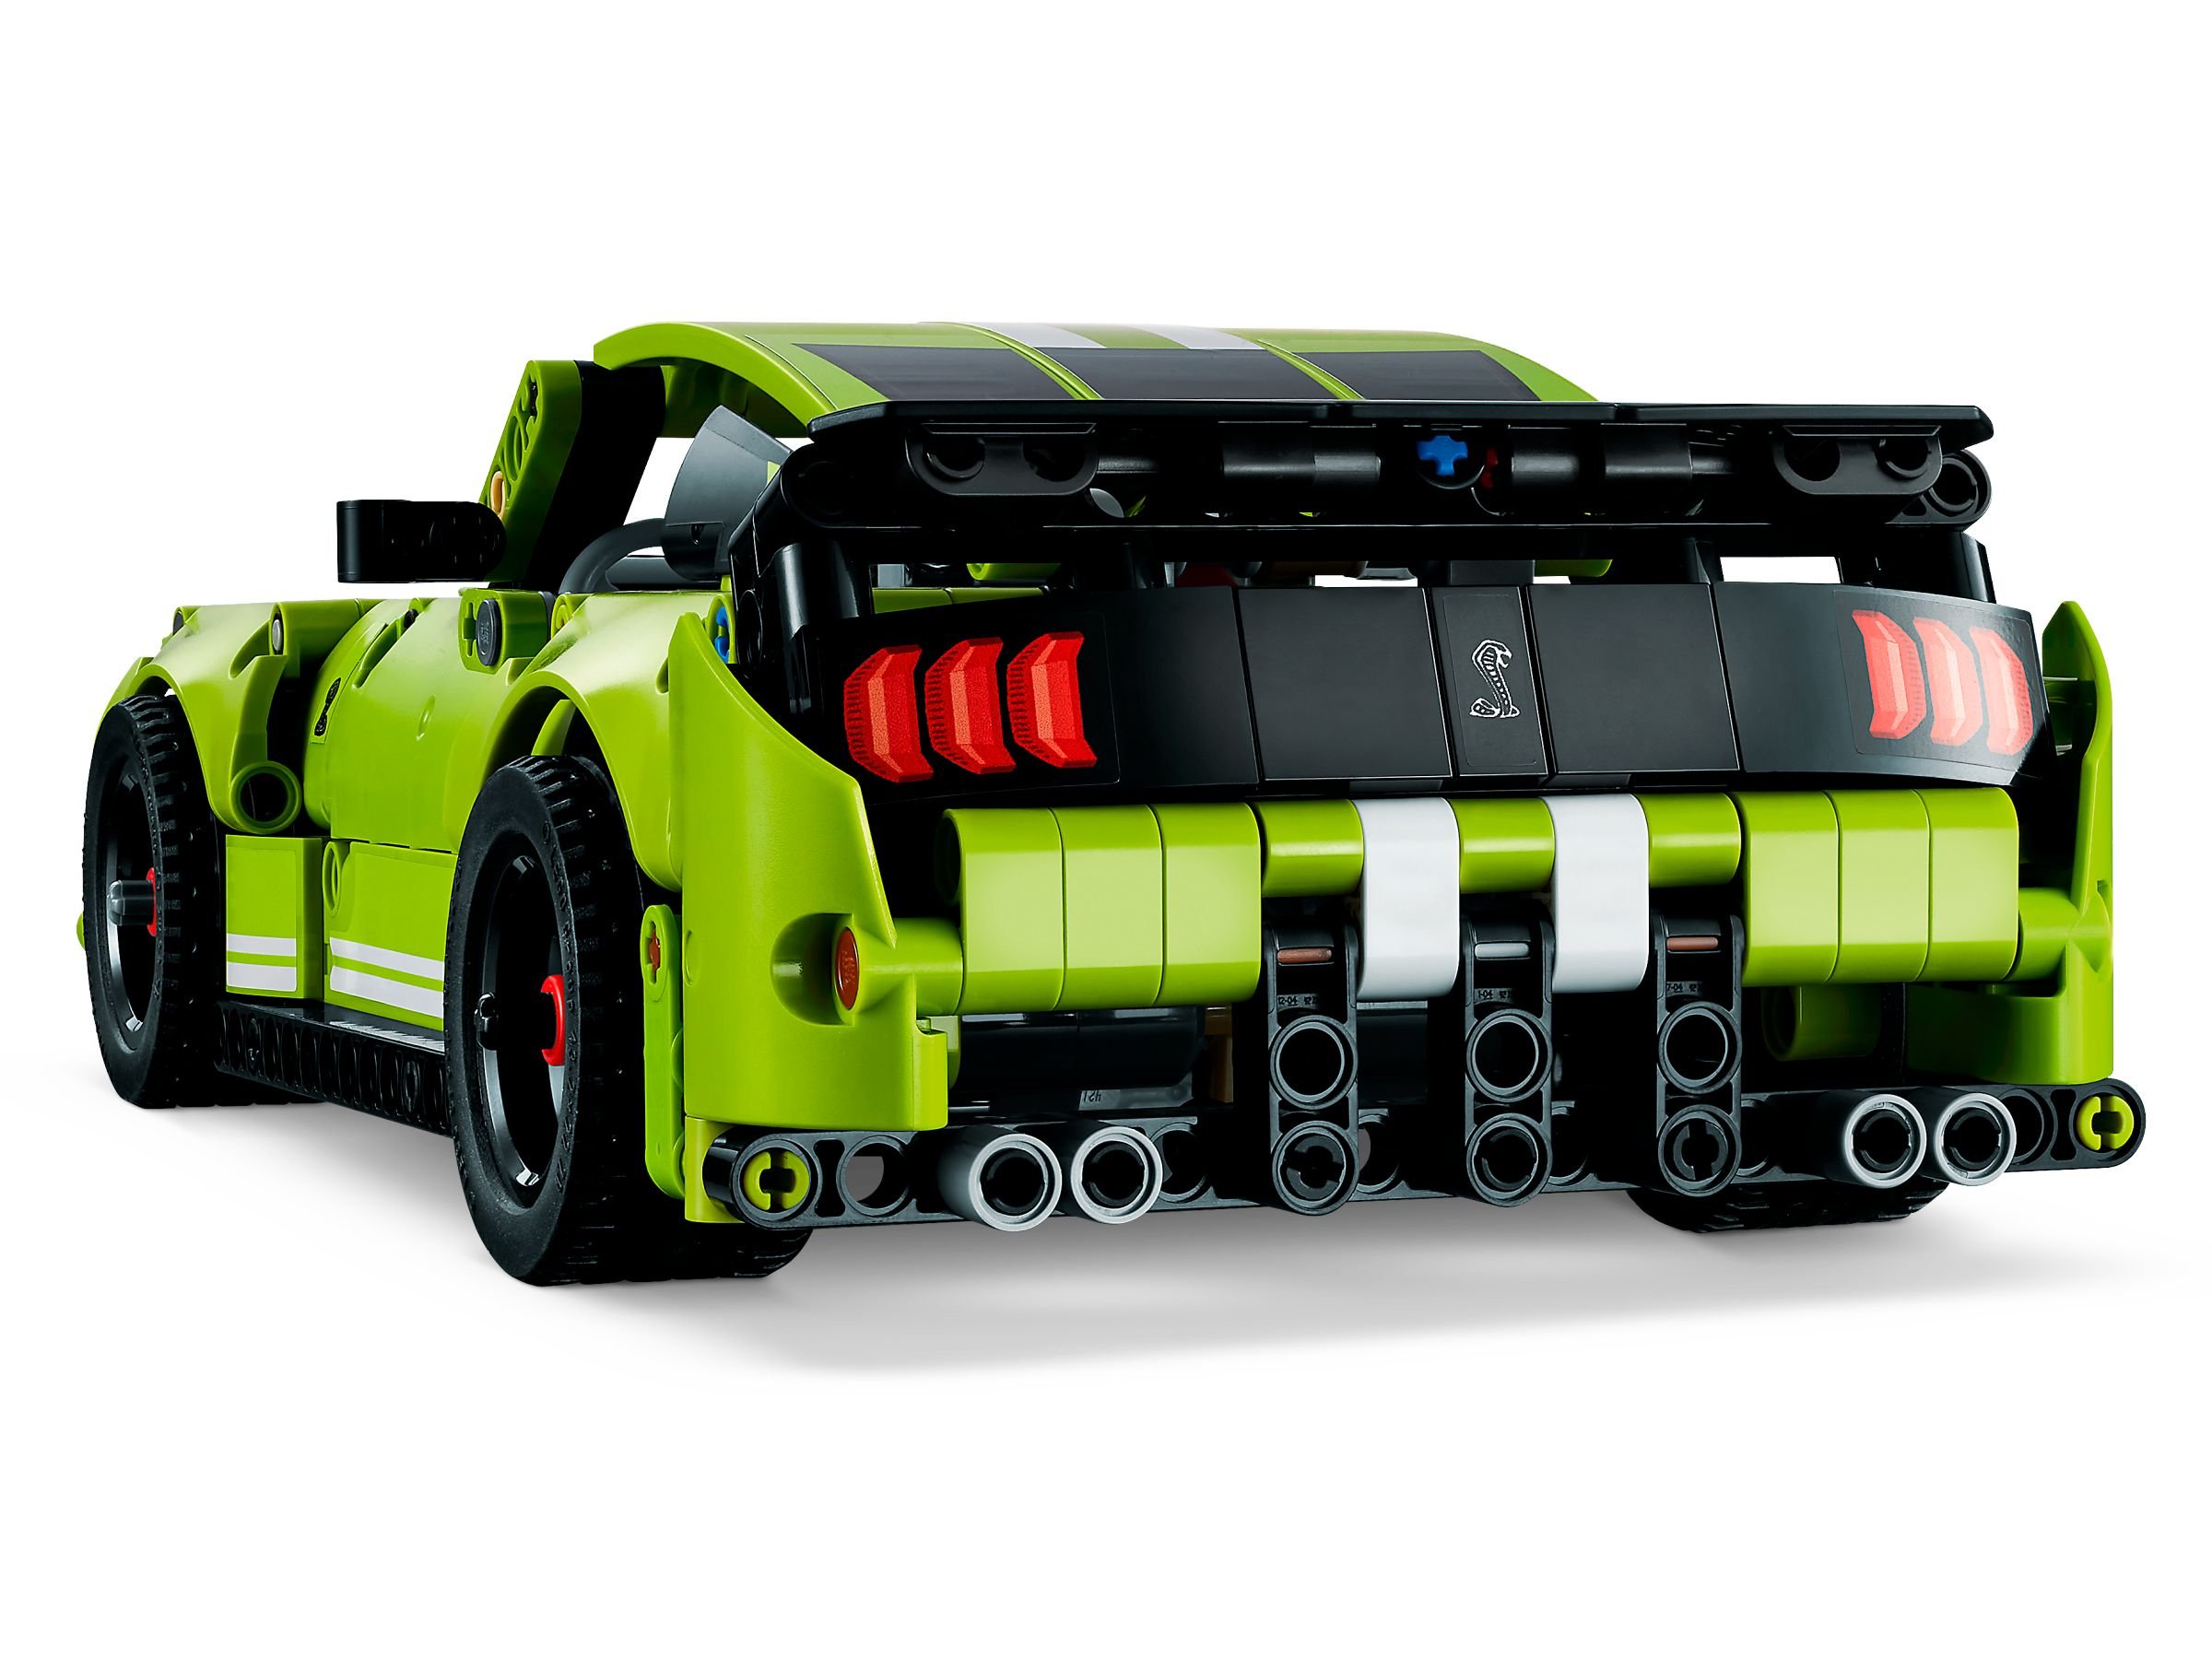 LEGO Technic 42138 Mustang Shelby Cobra LEGO_42138_alt3.jpg